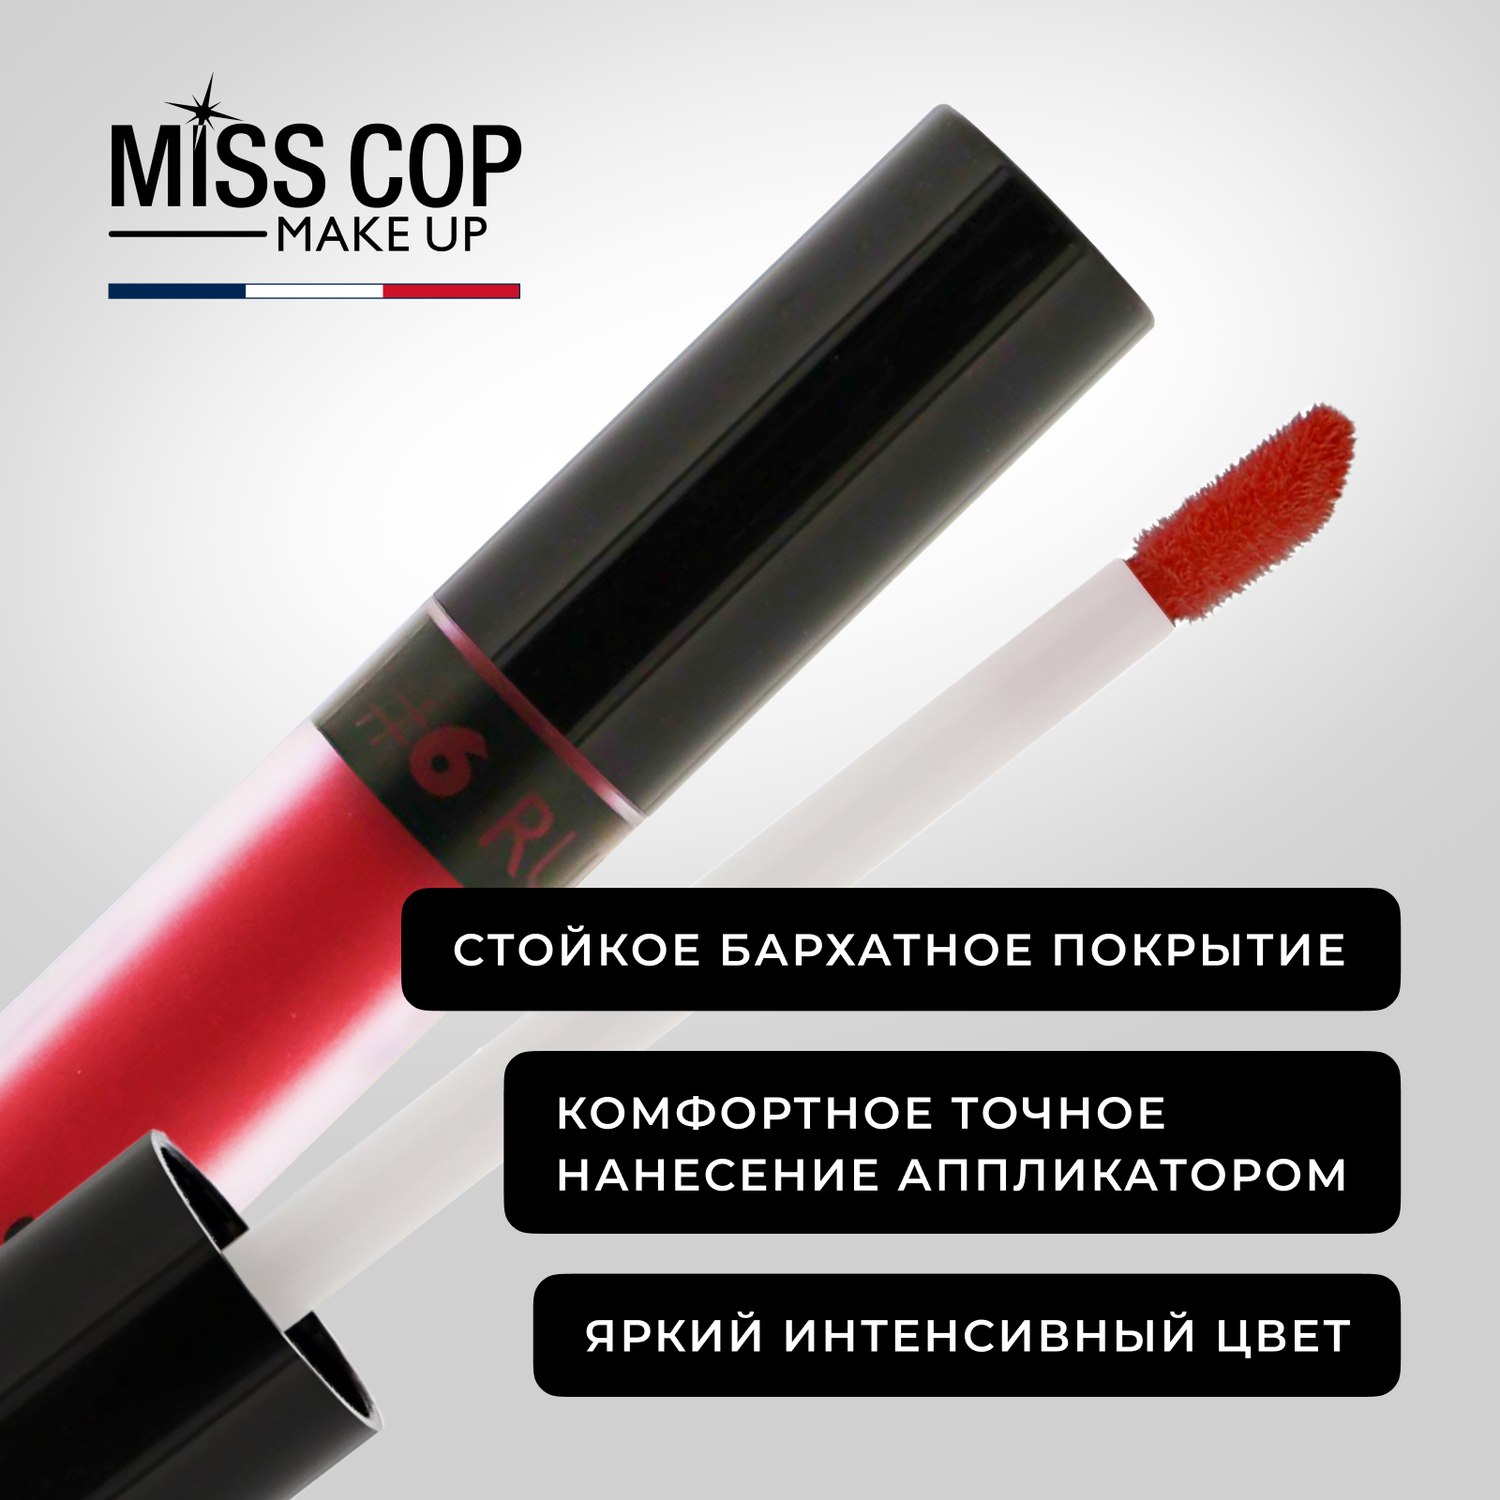 Жидкая губная помада Miss Cop матовая стойкая красная Франция цвет 06 Ruby рубин 2 мл - фото 5